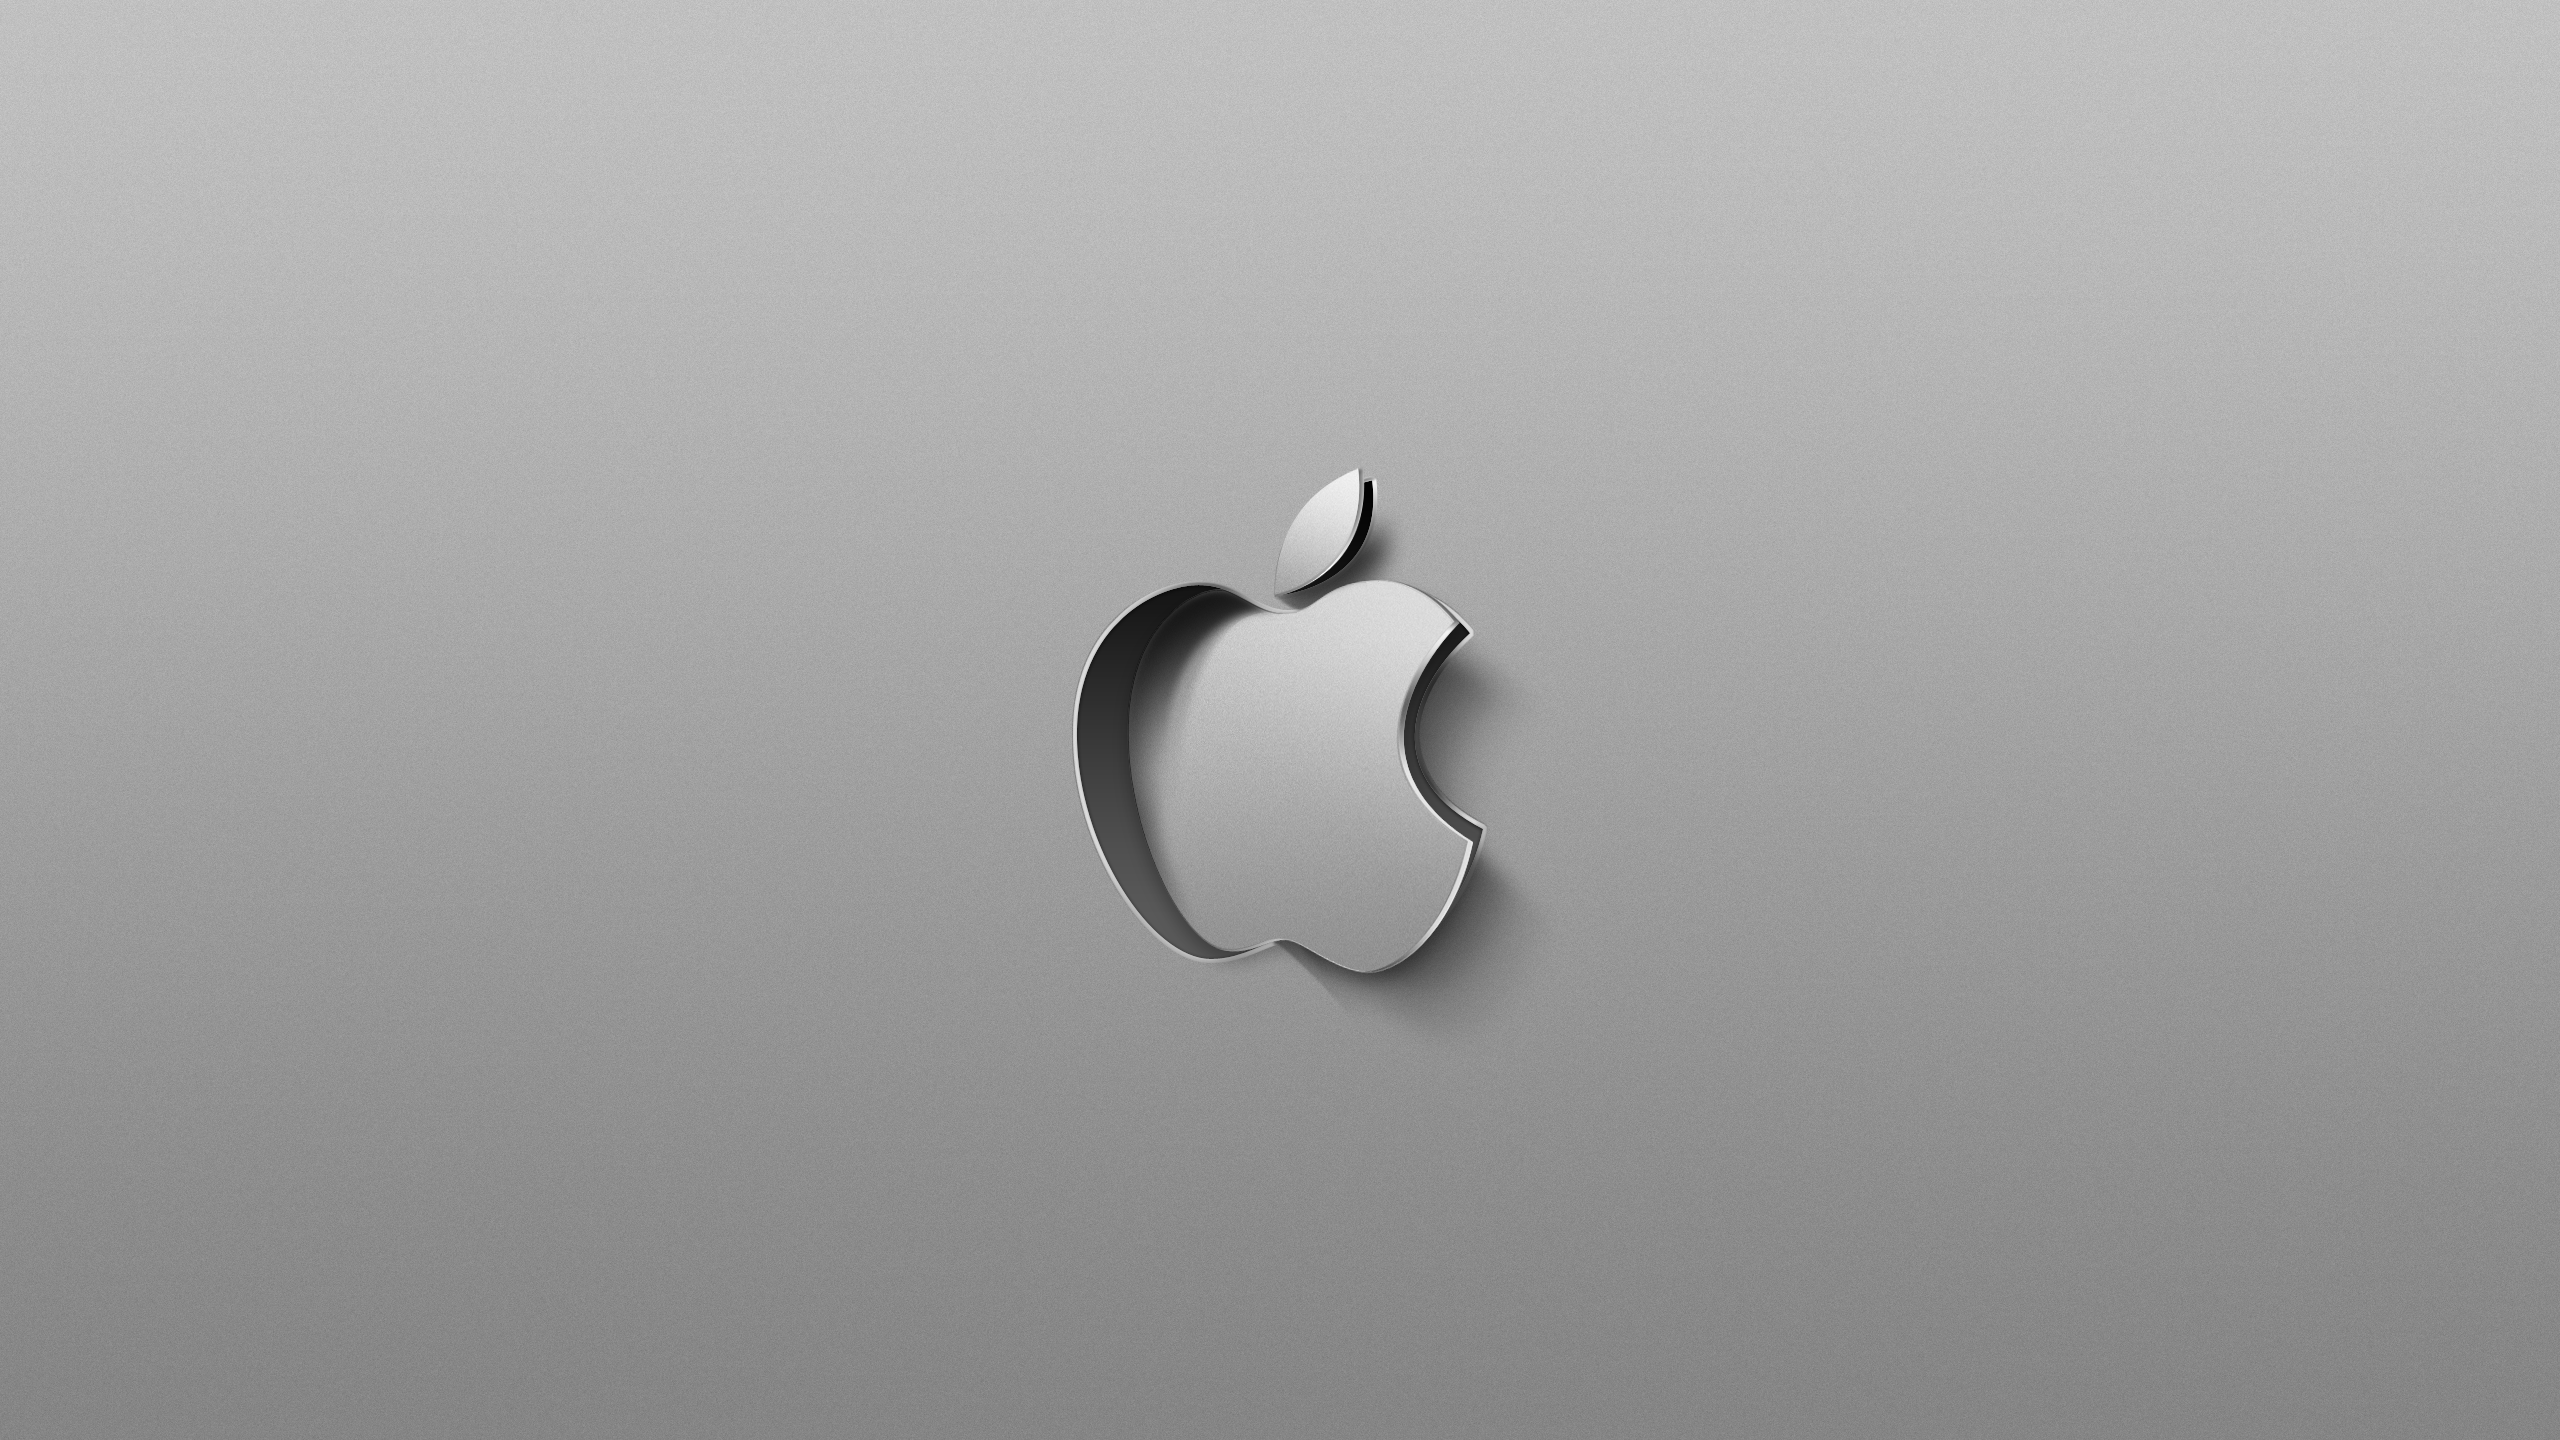 Hình nền Apple Logo 5K sẽ làm cho máy tính của bạn trở nên nổi bật hơn bao giờ hết! Với độ phân giải 5K cực cao, hình ảnh sẽ rất sắc nét và chân thực. Hãy tải về để thưởng thức khả năng đẳng cấp và tiên tiến của Apple.